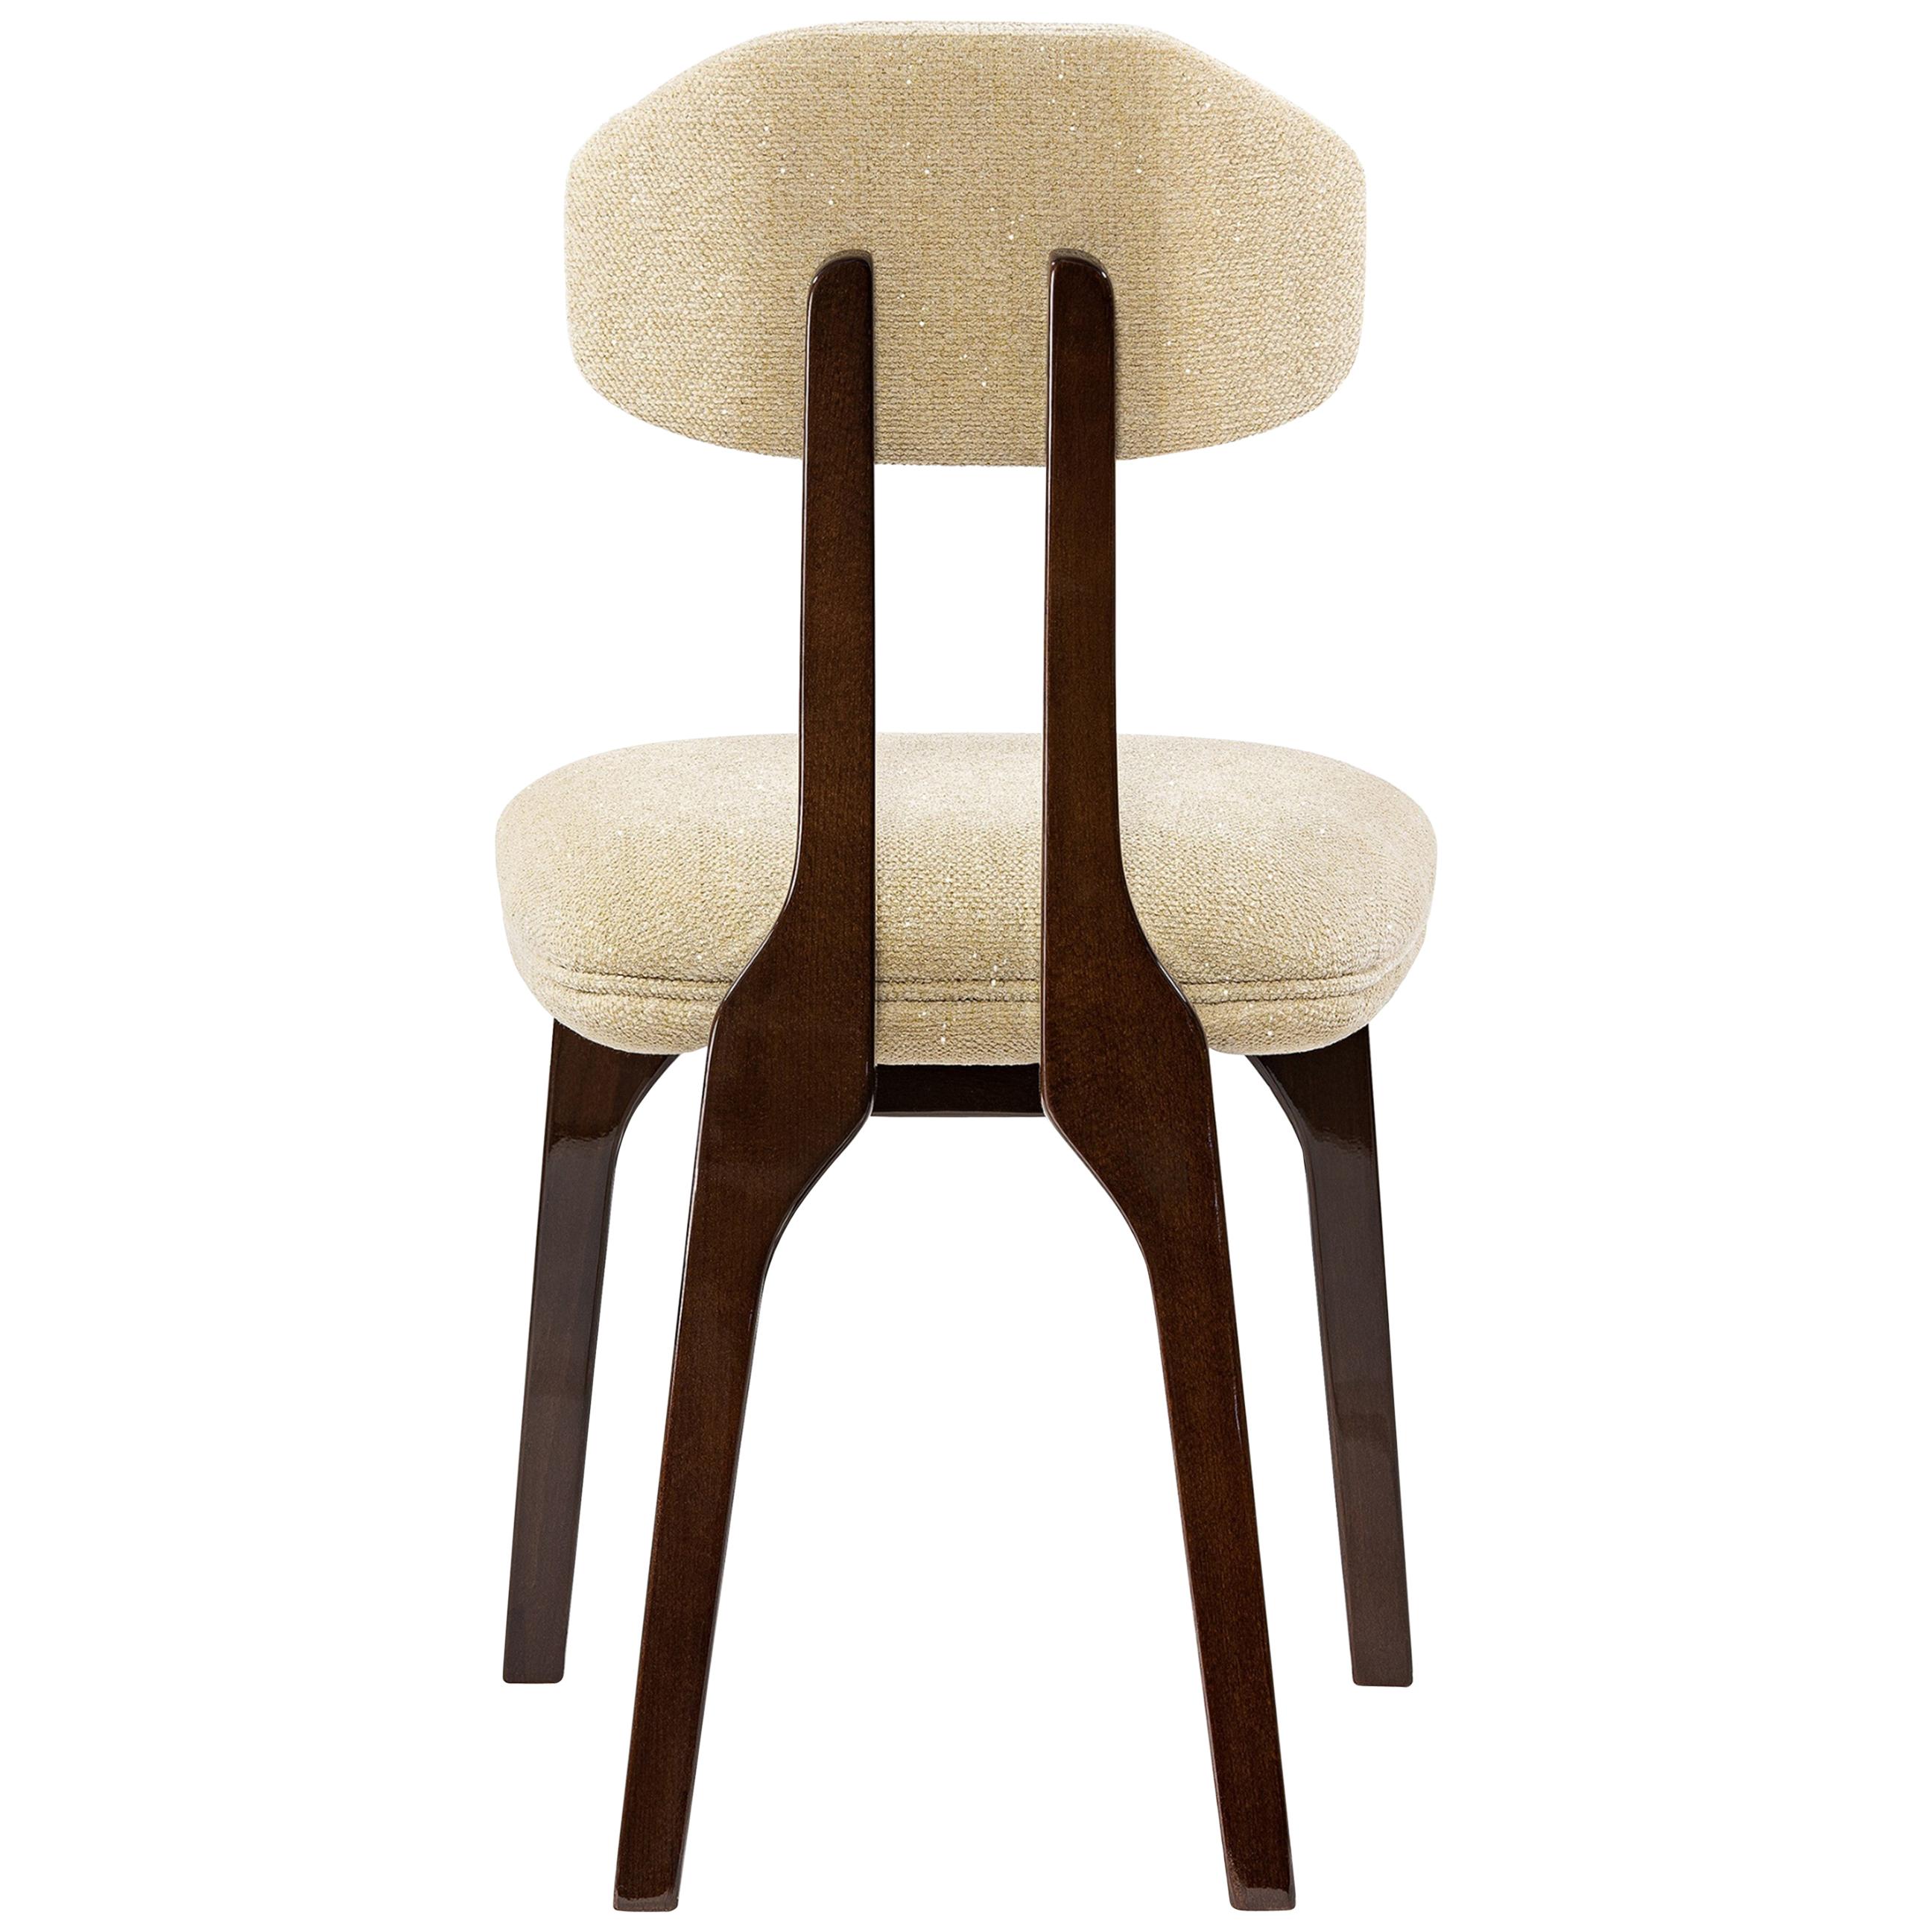 Chaise de salle à manger silhouette, marron translucide, InsidherLand de Joana Santos Barbosa